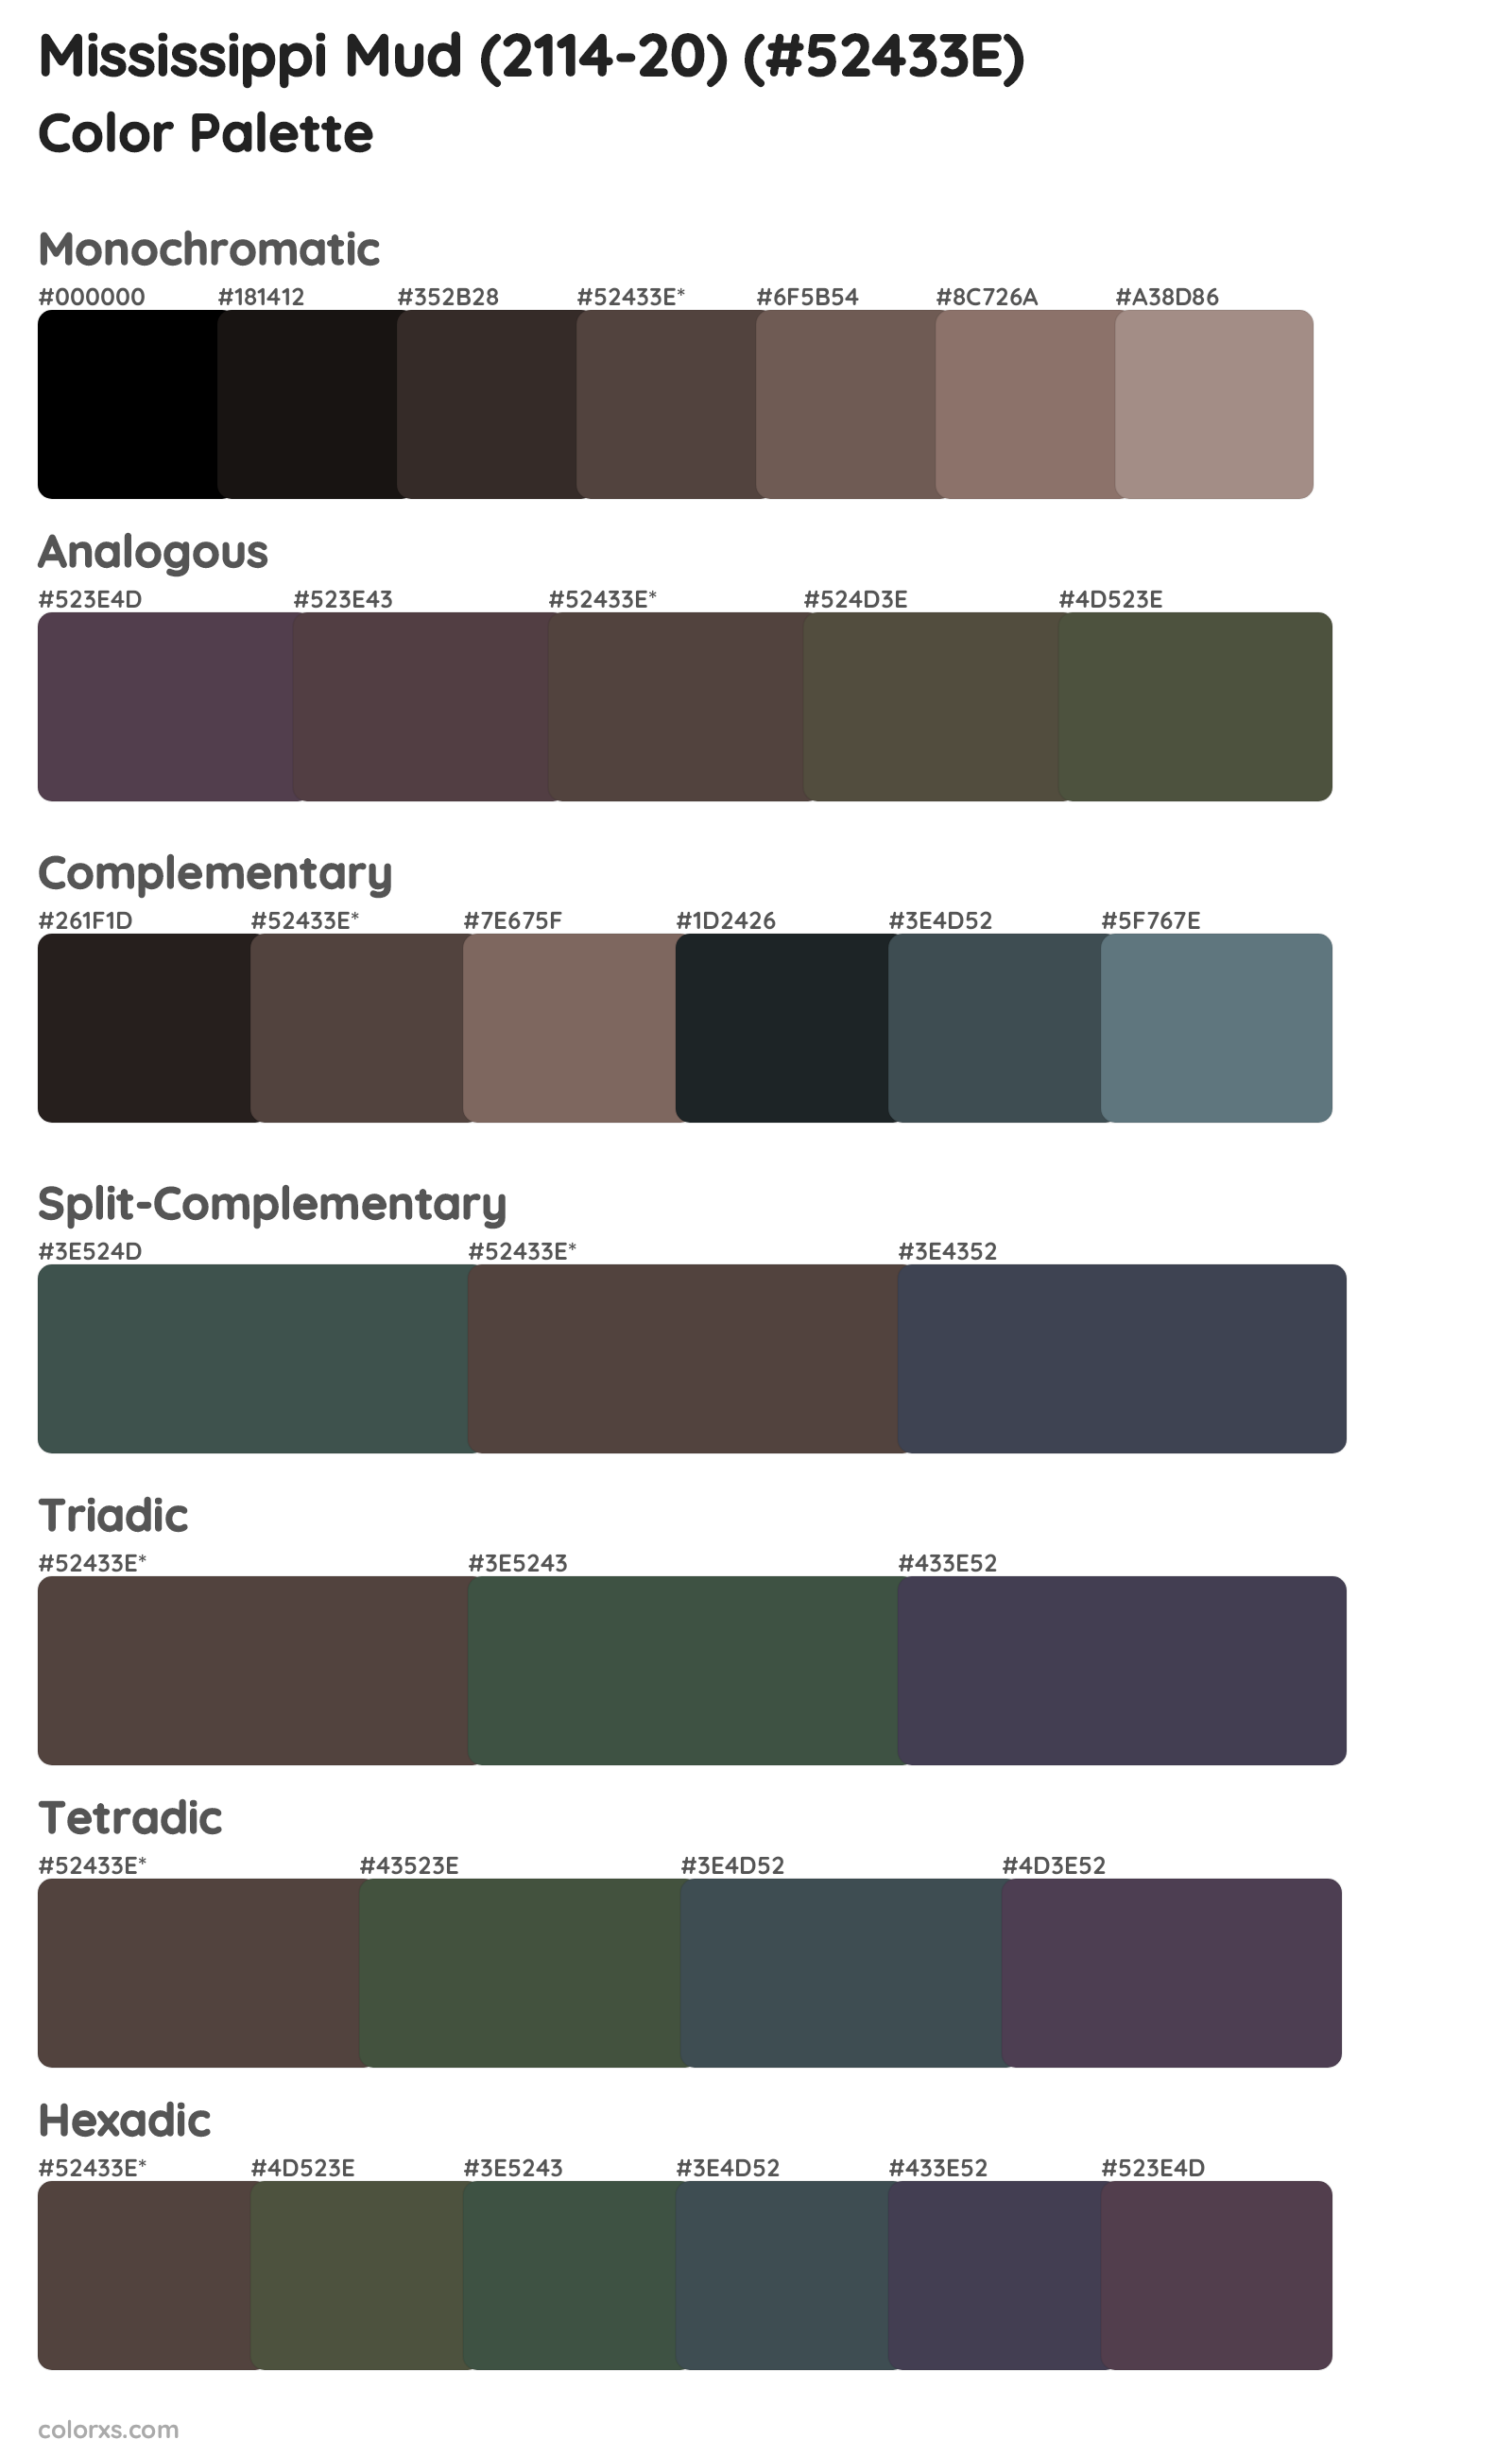 Mississippi Mud (2114-20) Color Scheme Palettes